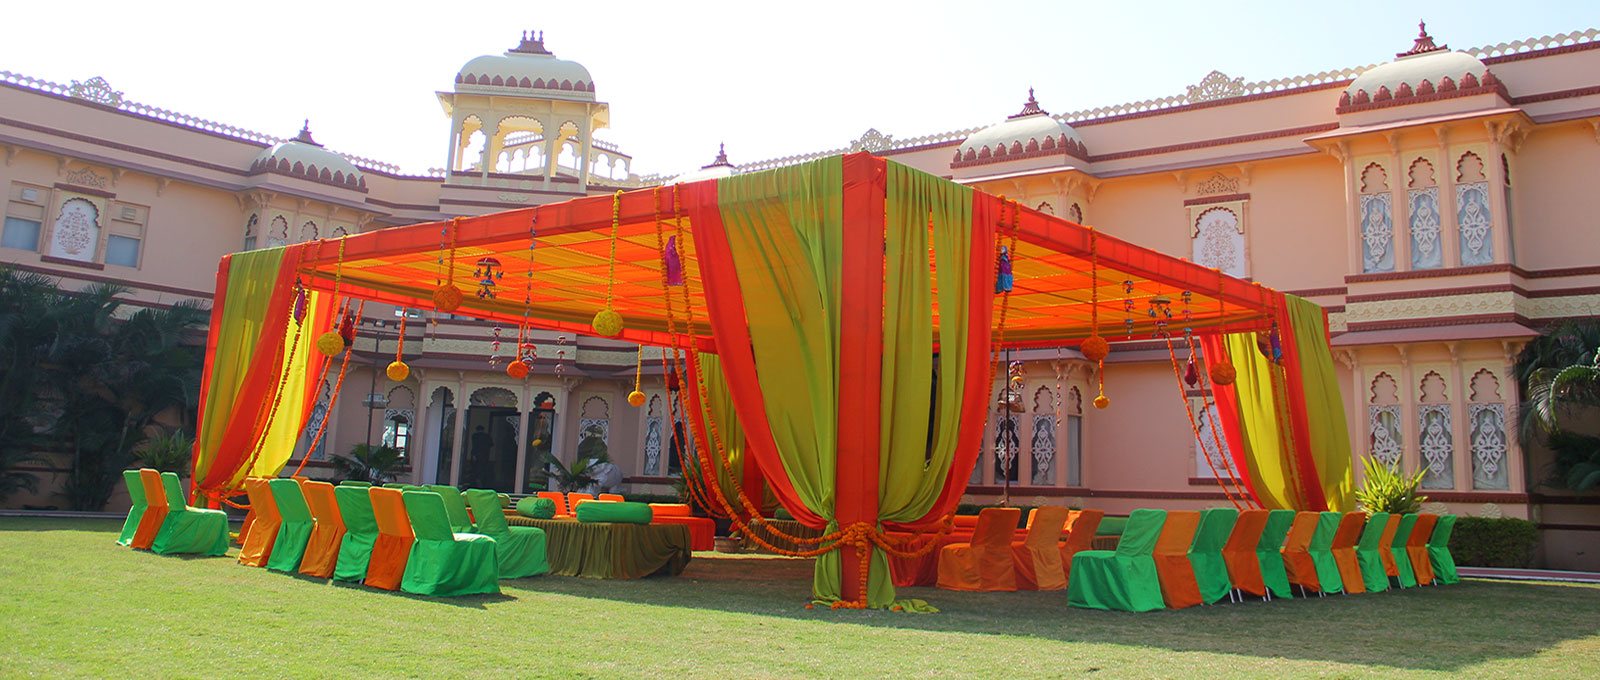 Weddings destination in udaipur